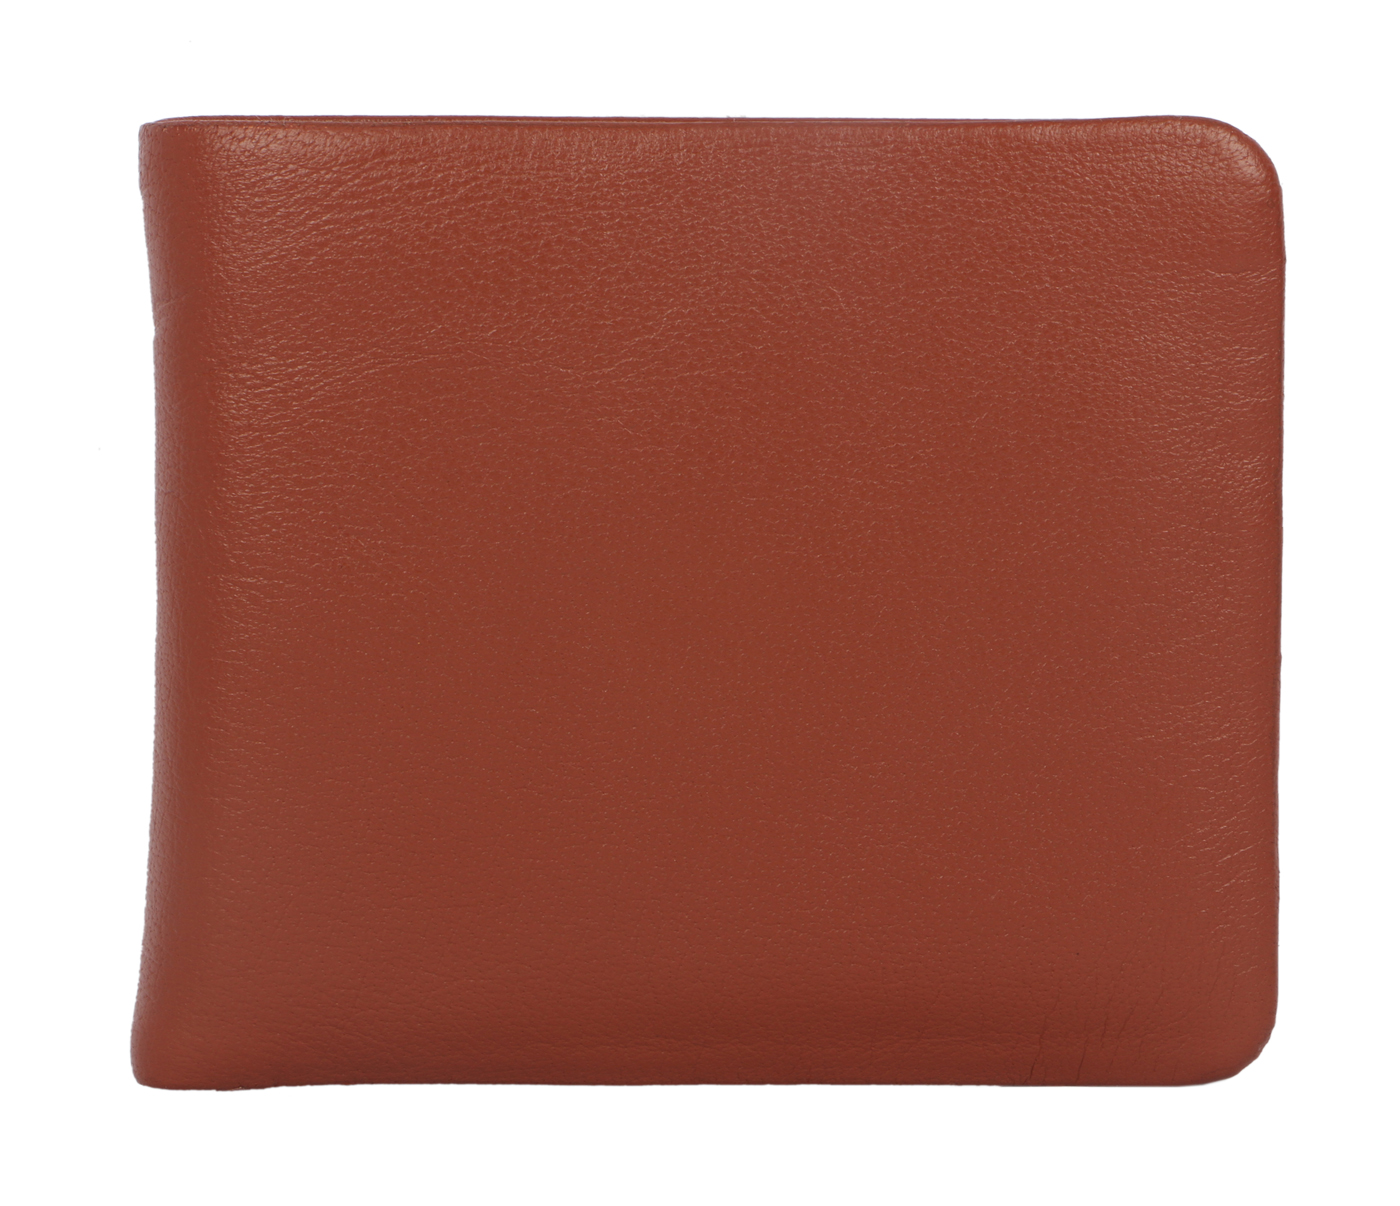 Almeda Leather Wallet(Tan)VW3